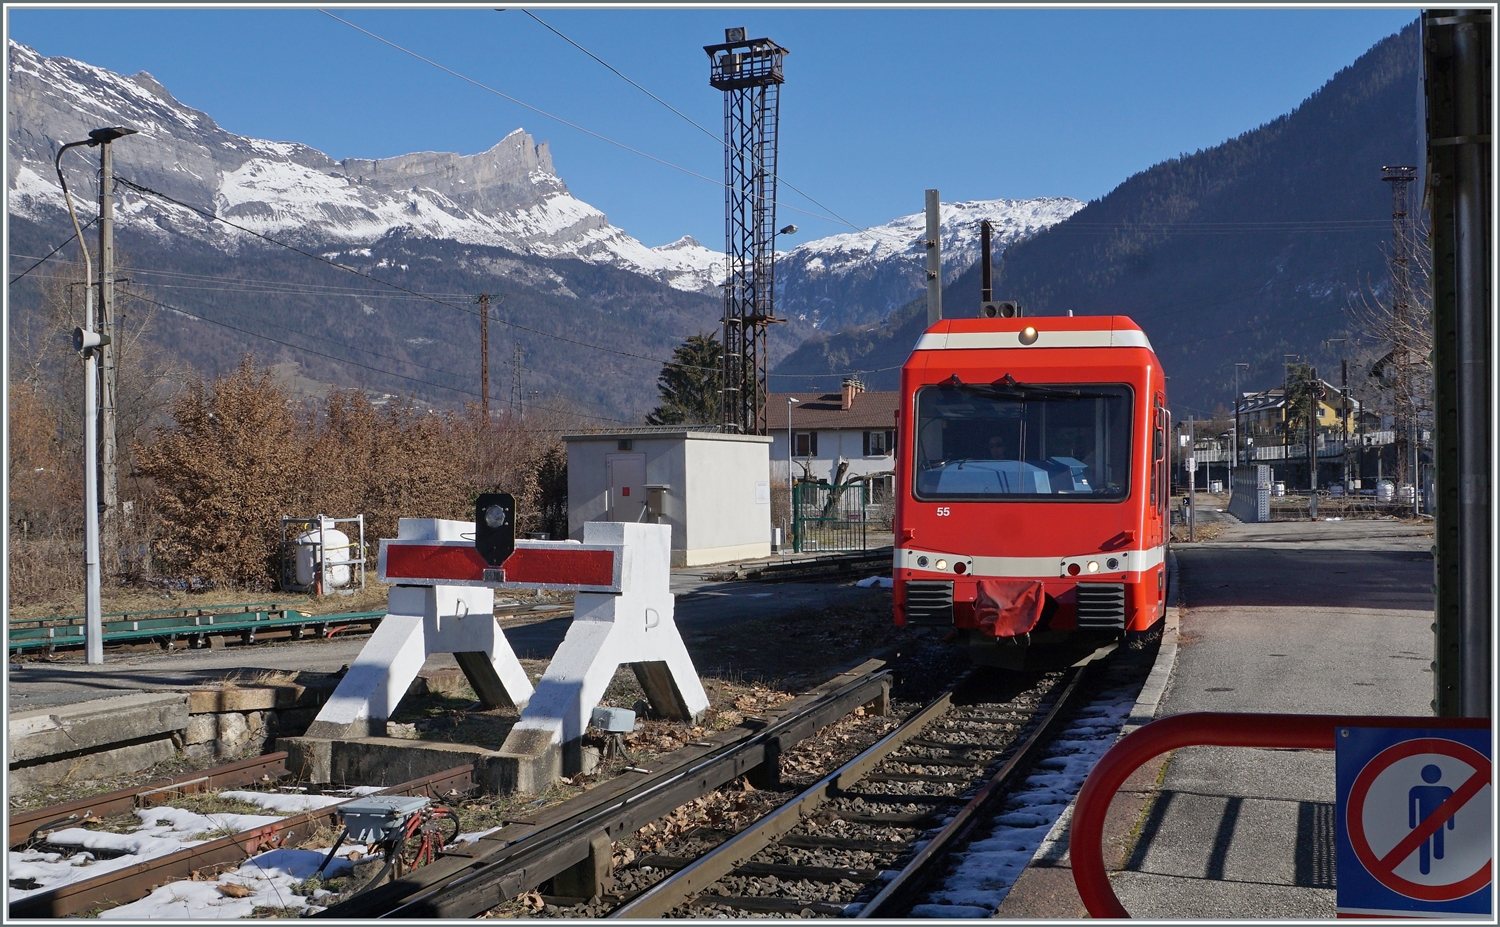 Der SNCF Z 855 erreicht von Vallorcine kommend sein Ziel Saint Gervais les Bains le Fayet. Der Zug wird später weggestellt werden.

14. Februar 2023